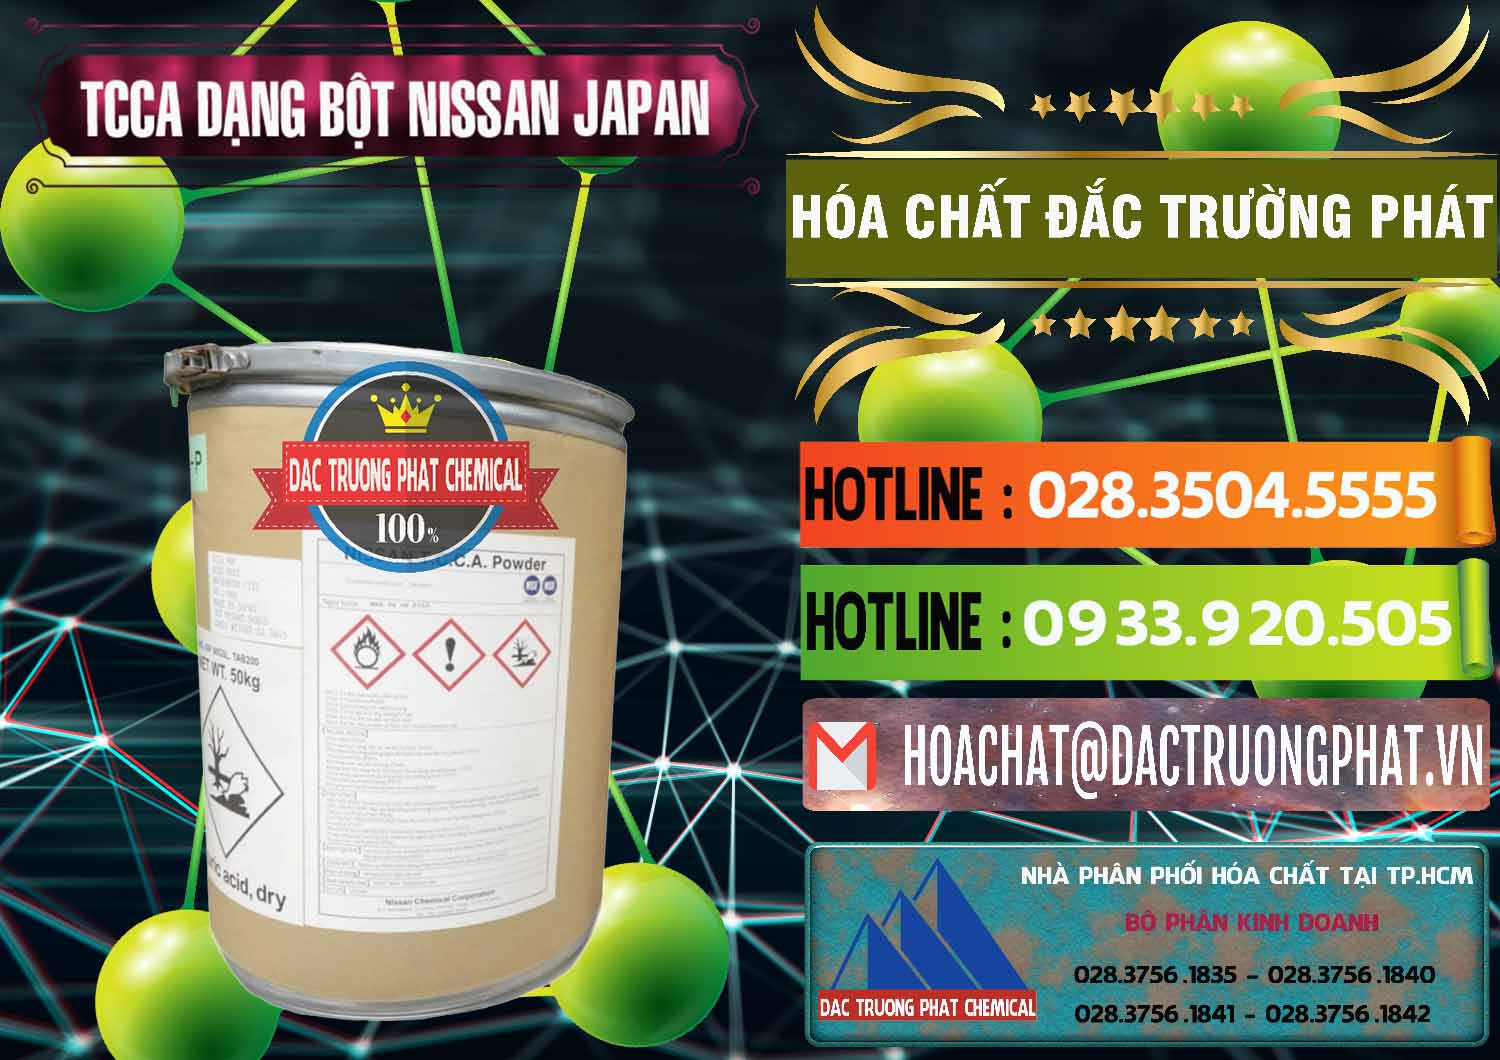 Nơi bán ( cung cấp ) TCCA - Acid Trichloroisocyanuric 90% Dạng Bột Nissan Nhật Bản Japan - 0375 - Nơi phân phối & cung cấp hóa chất tại TP.HCM - cungcaphoachat.com.vn